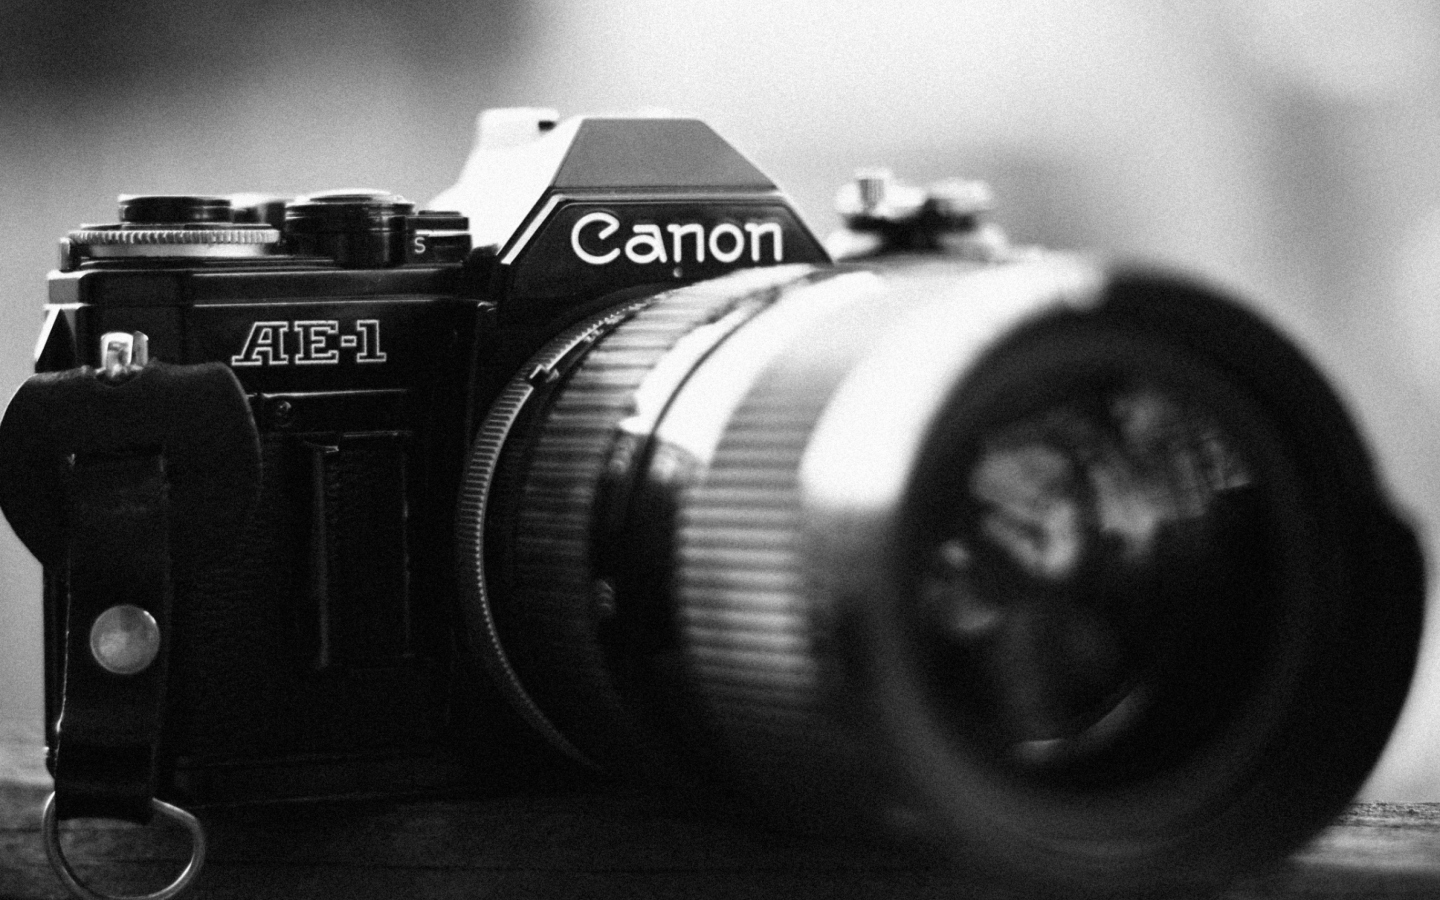 Das Ae-1 Canon Camera Wallpaper 1440x900